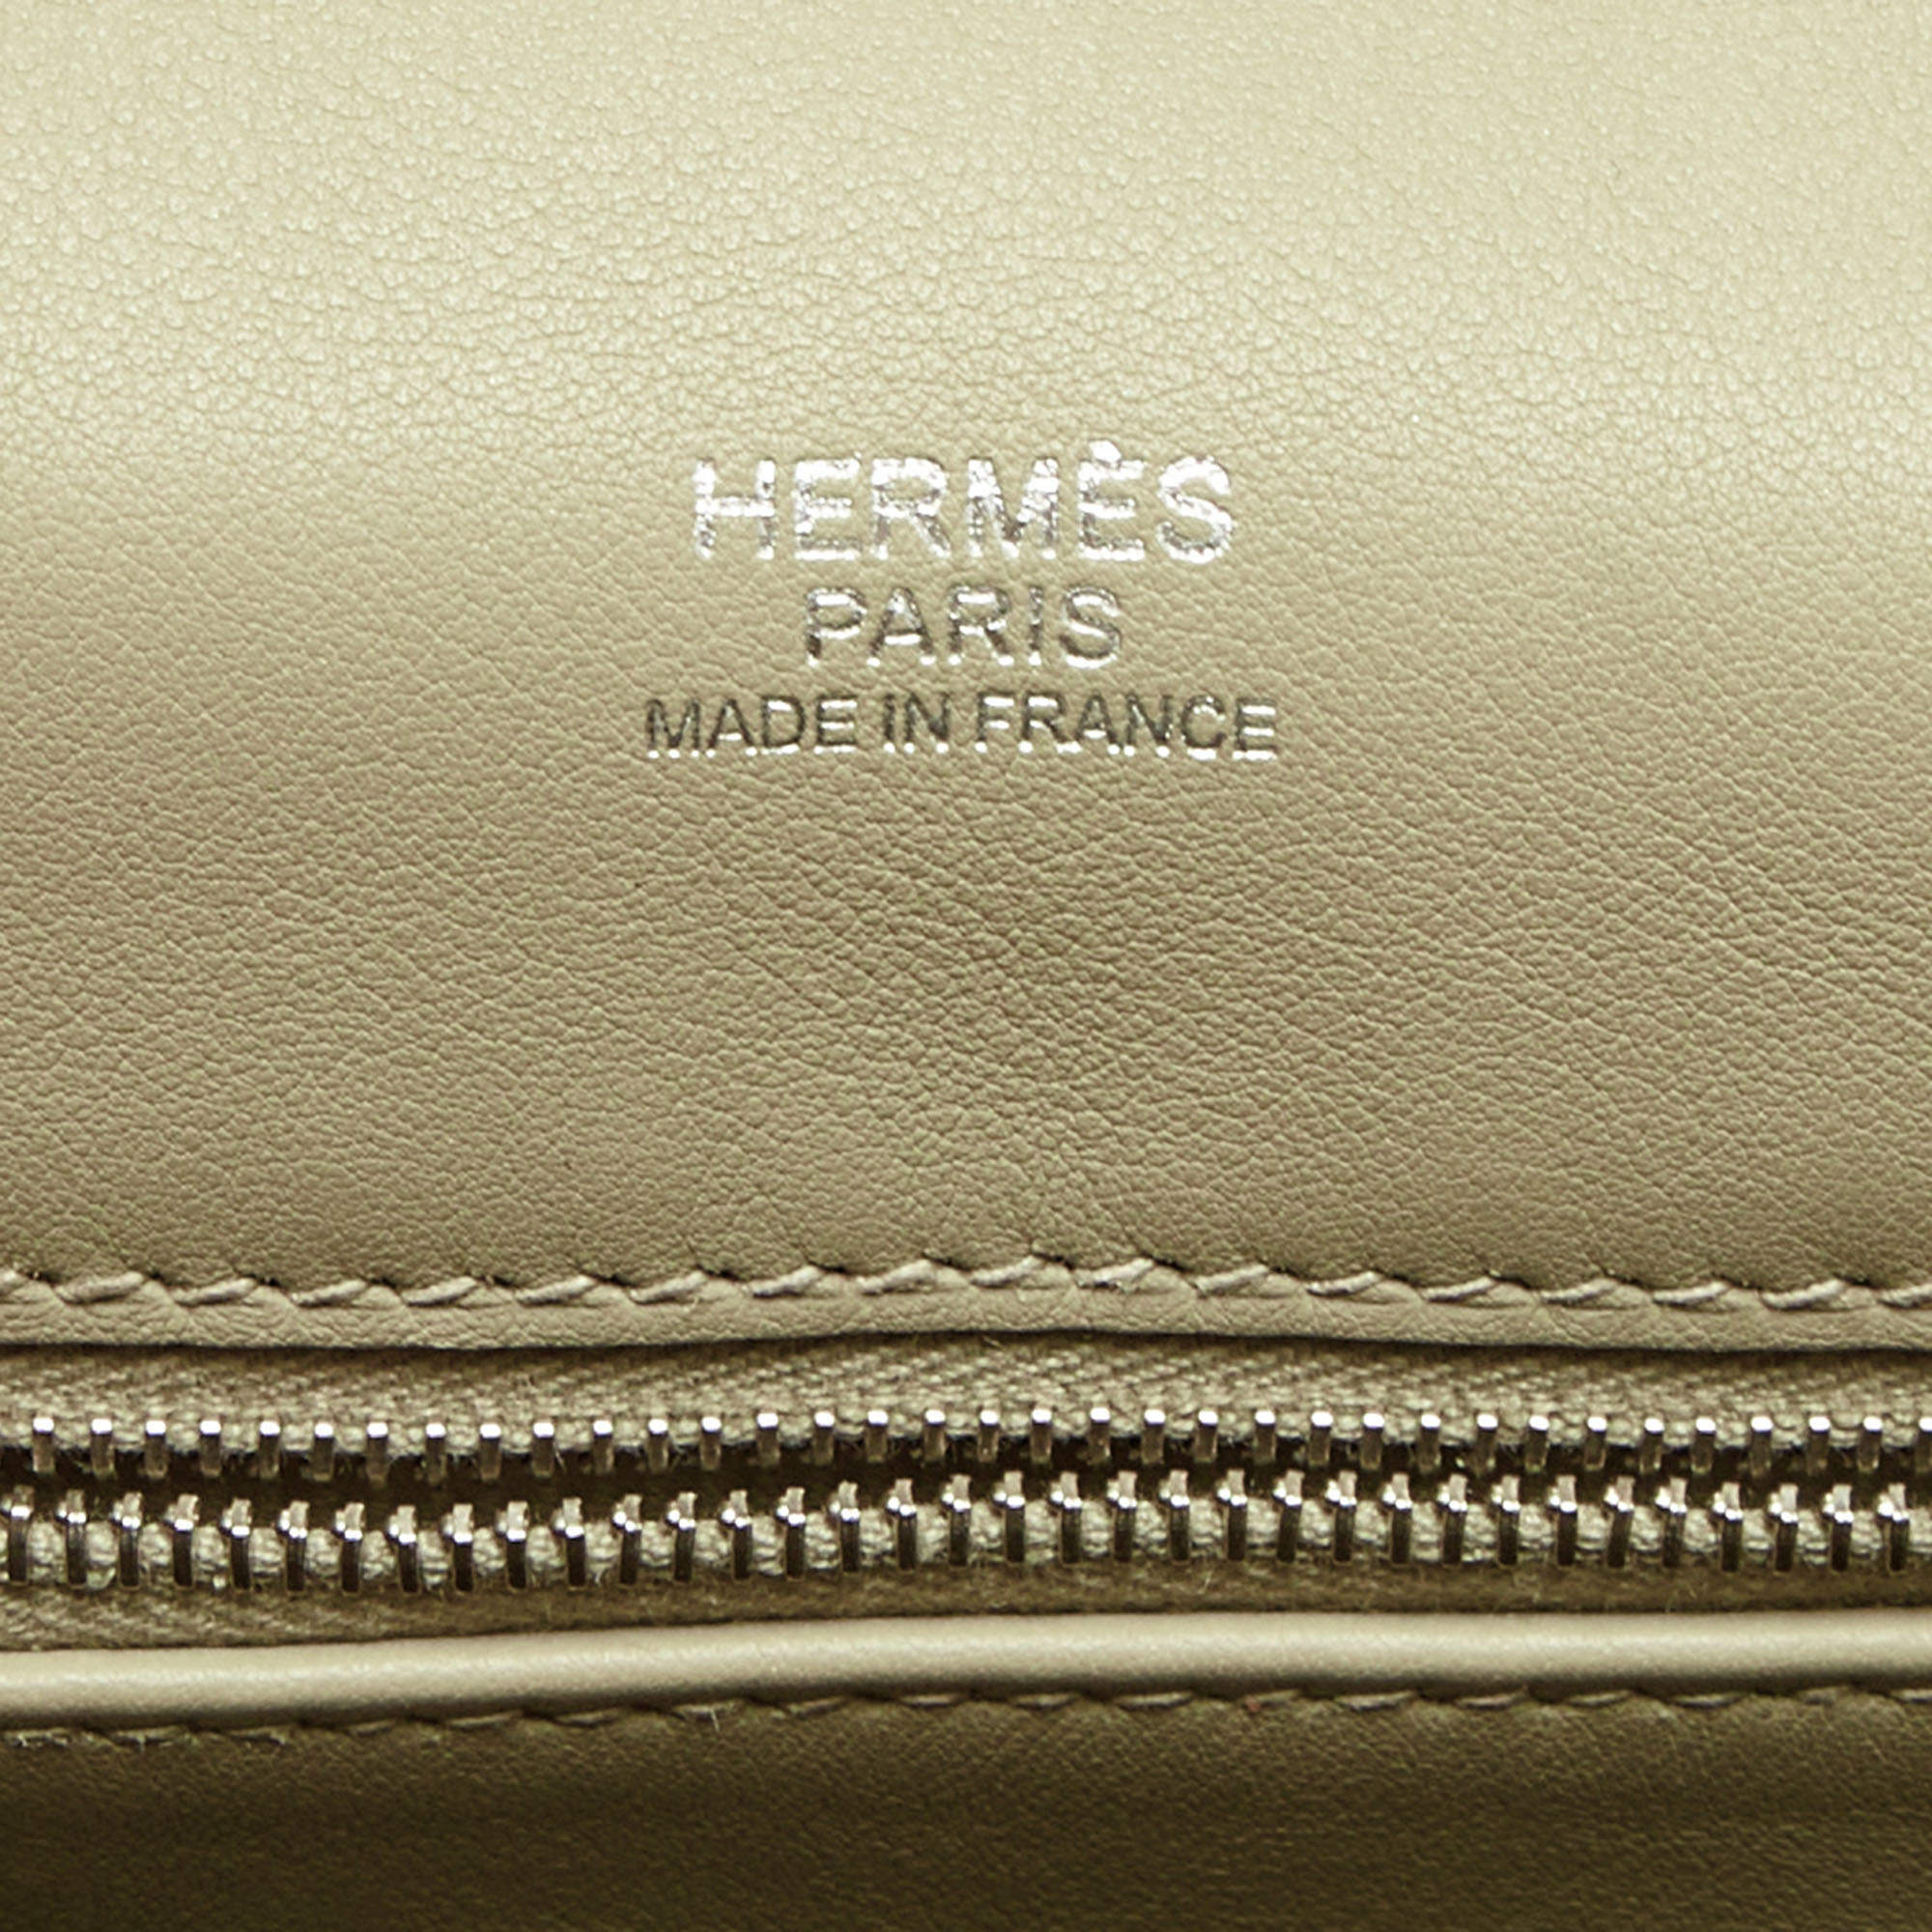 Hermès Berline Shoulder bag 325299